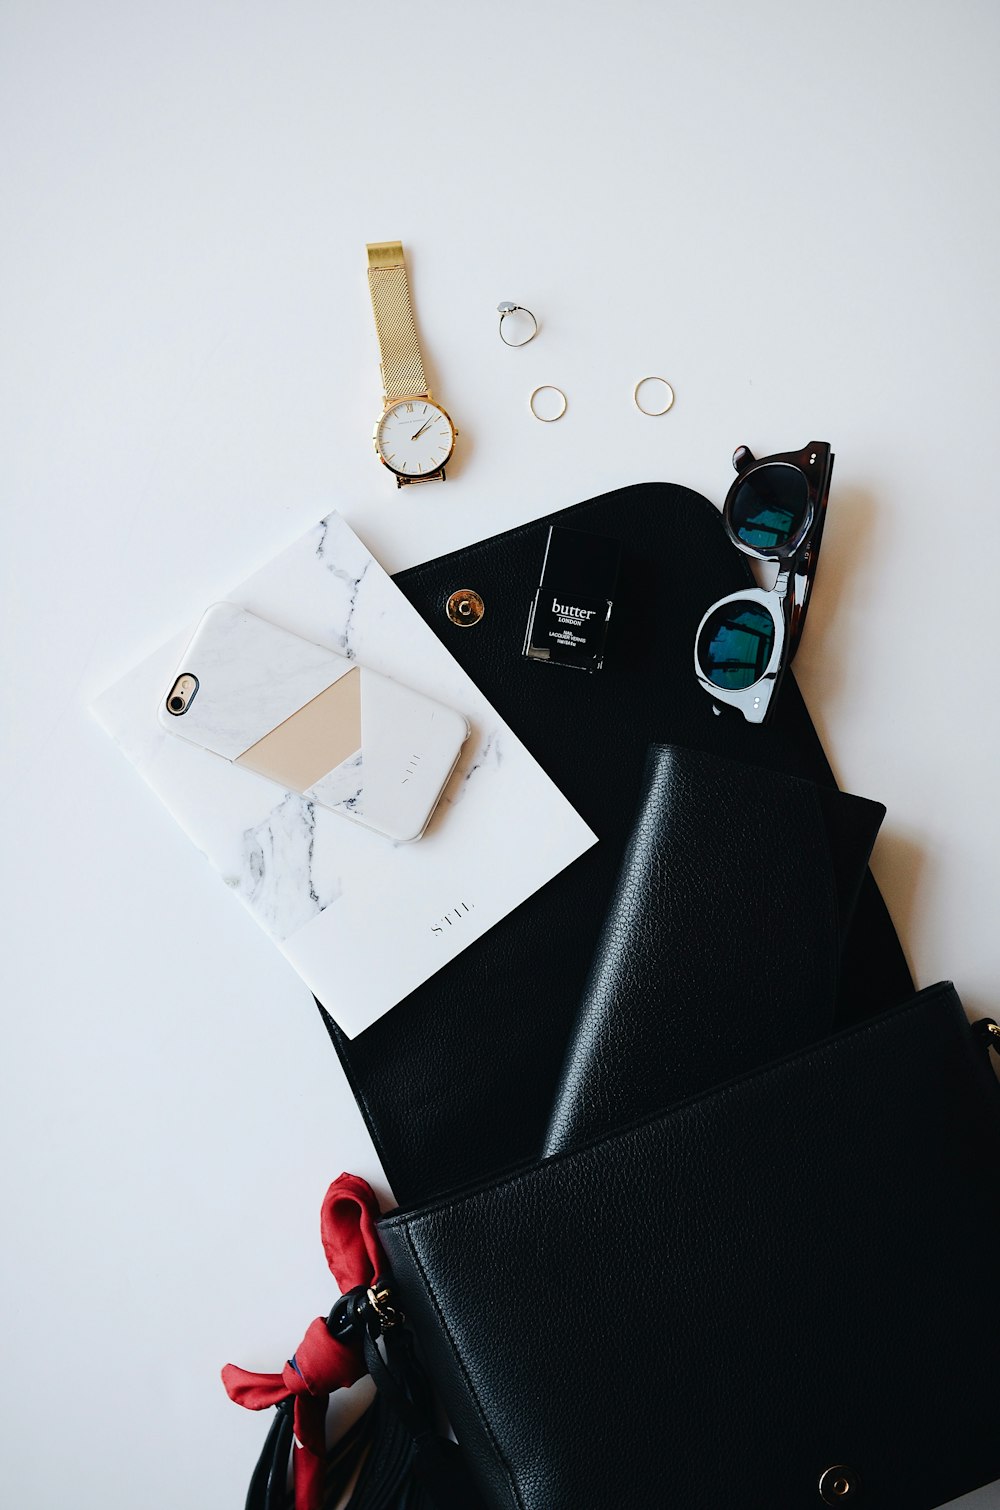 Un presse-papiers noir recouvert d’objets aléatoires, tels qu’une montre en or, un smartphone blanc, un portefeuille en cuir et une paire de lunettes.